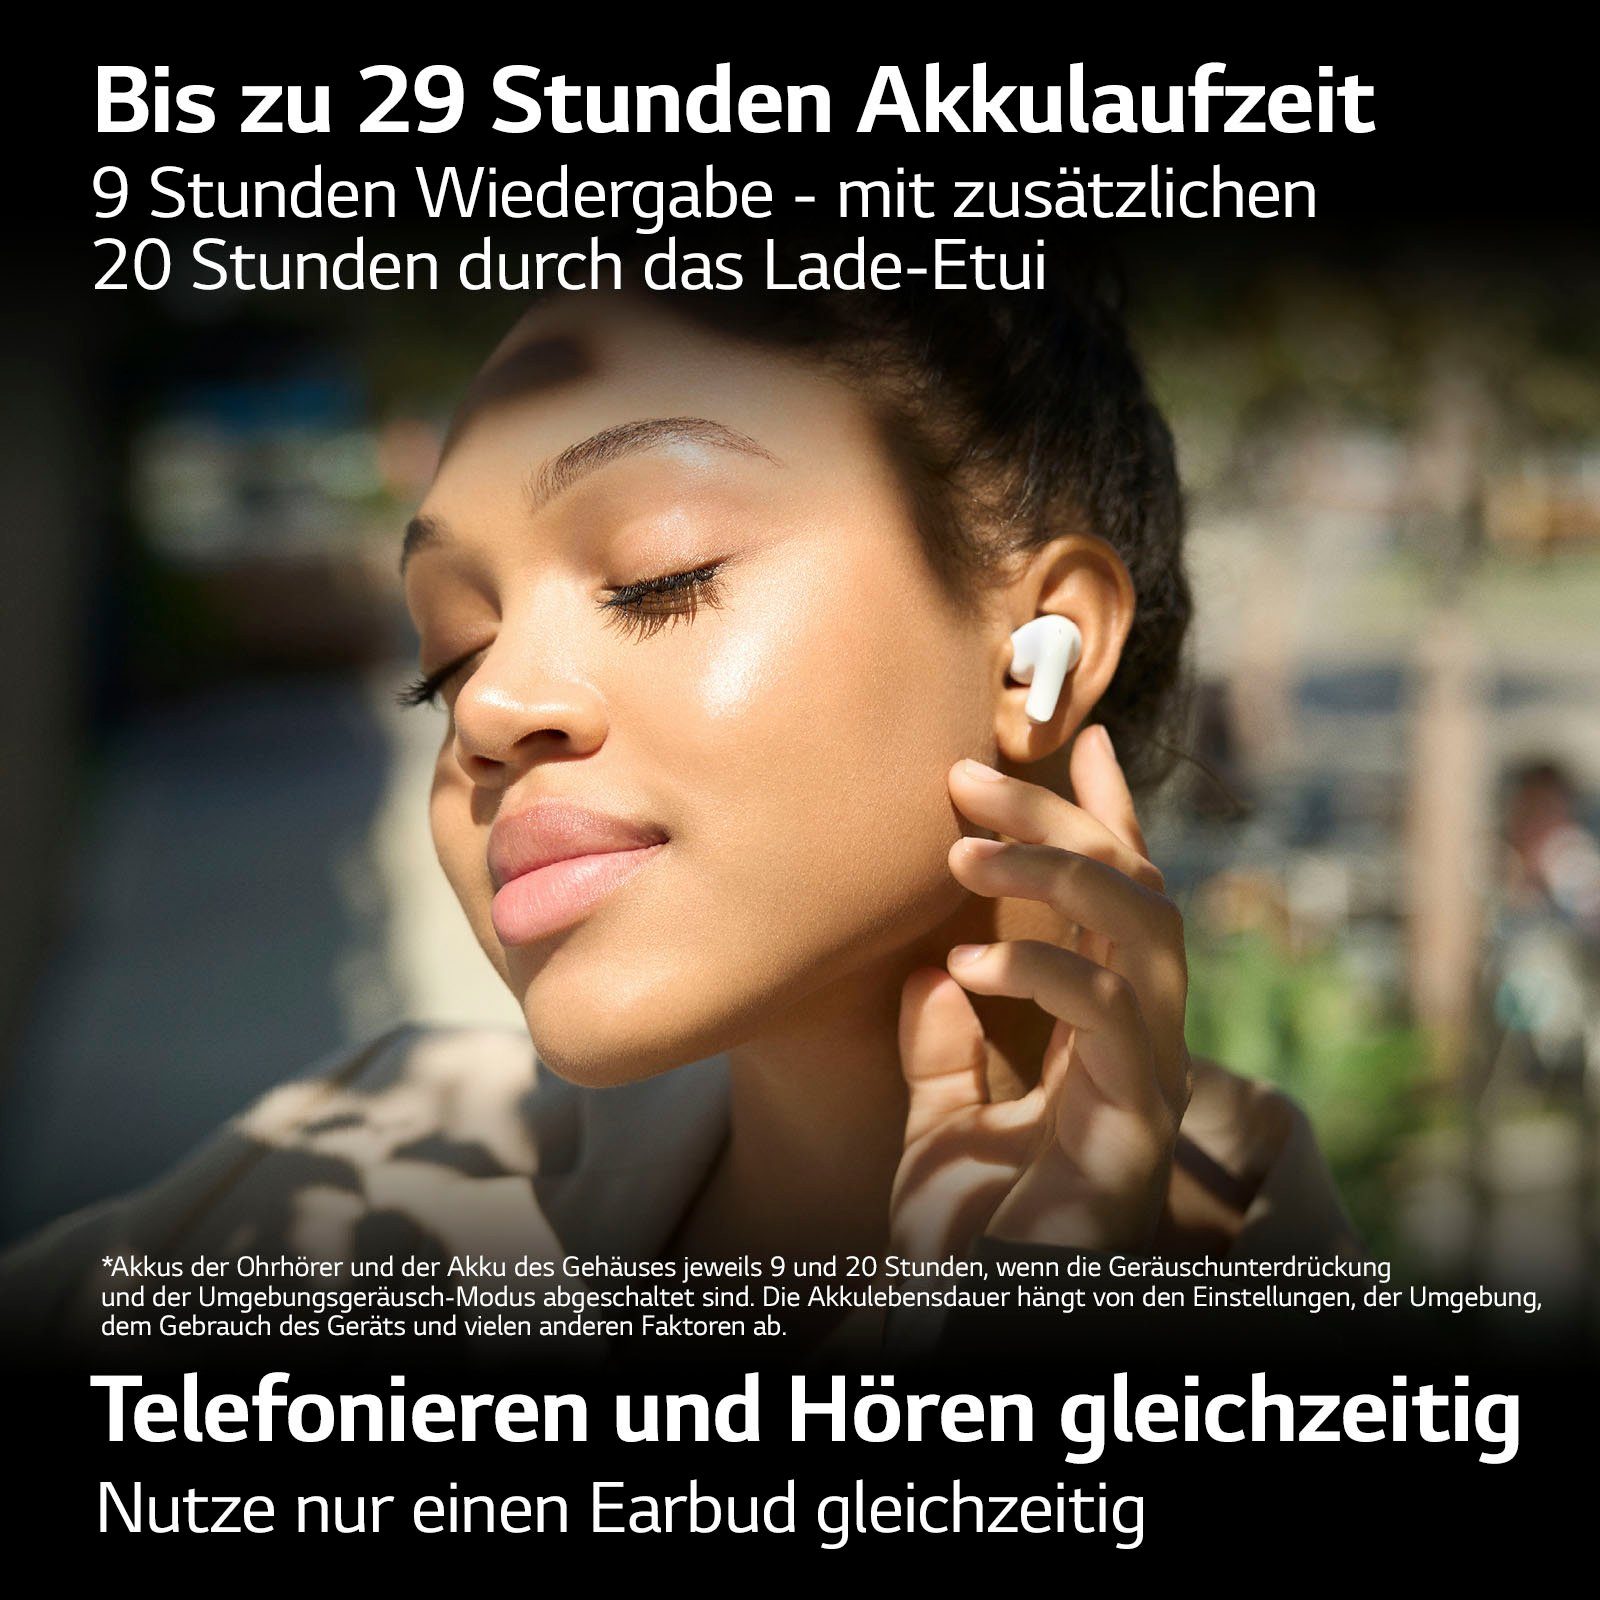 Free DT60Q wireless Schwarz LG TONE In-Ear-Kopfhörer